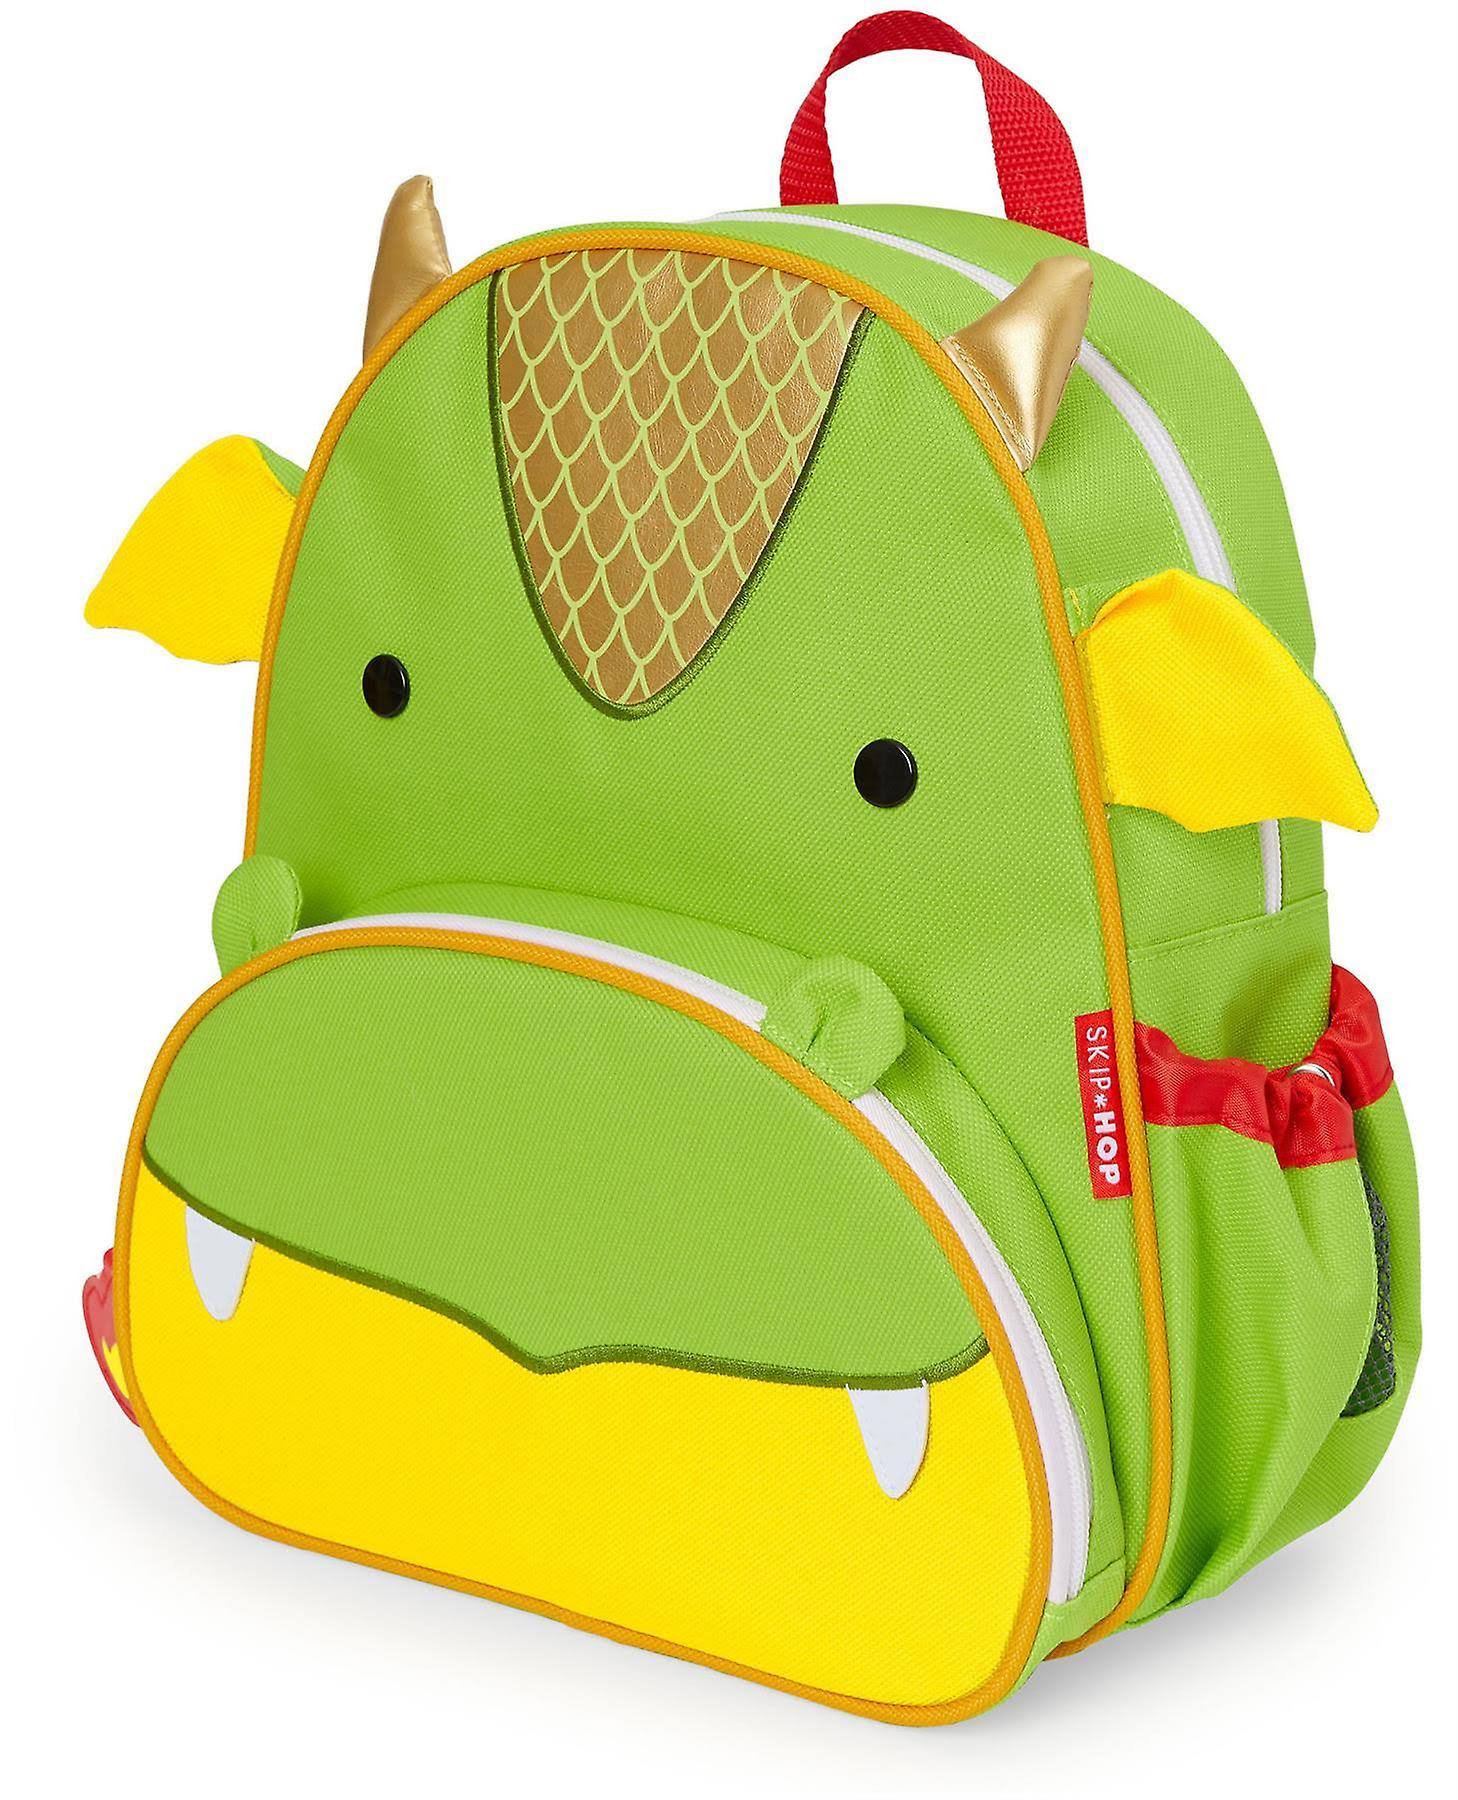 Skip Hop Zoo Pack Backpack (Dragon)